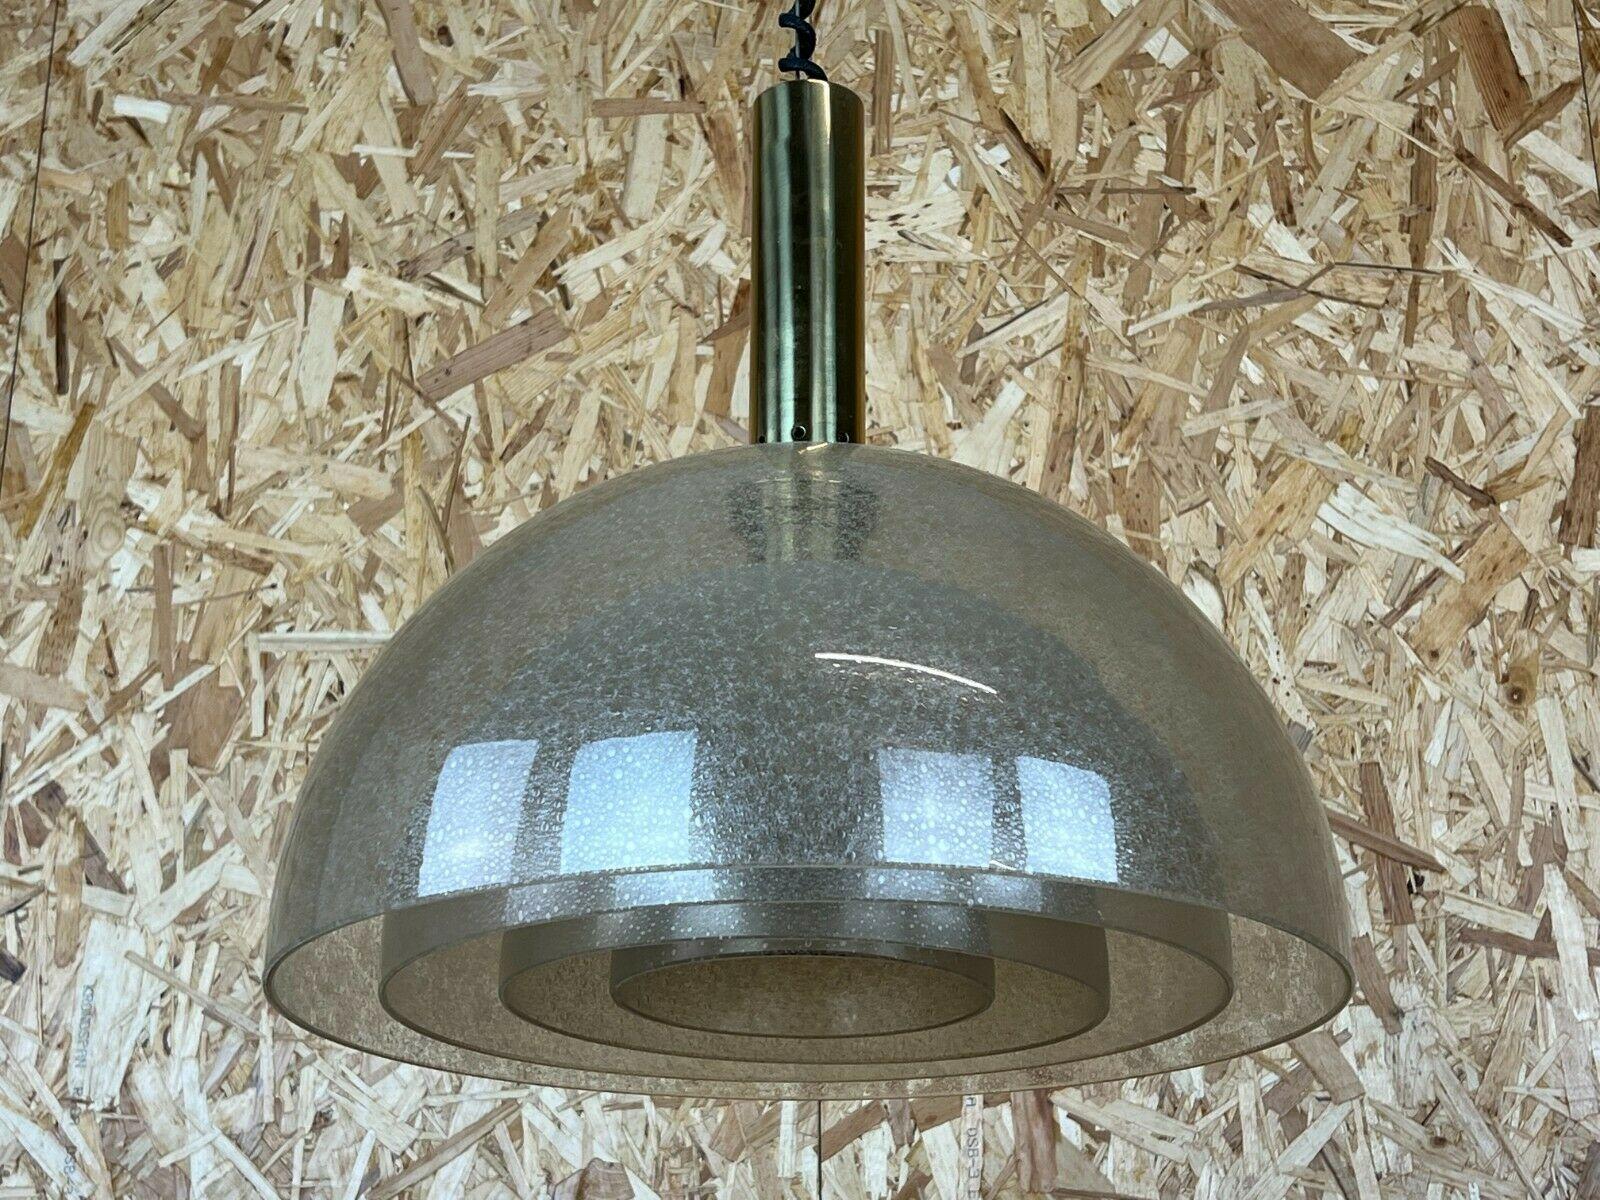 60s 70s Carlo Nason for Mazzega Puegoso glass chandelier lamp design 1960s.

Objet : lampe de plafond

Fabricant : Mazzega

État : bon

Âge : environ 1960-1970

Dimensions :

Diamètre = 46,5 cm
Hauteur = 46cm

Autres notes :

Les